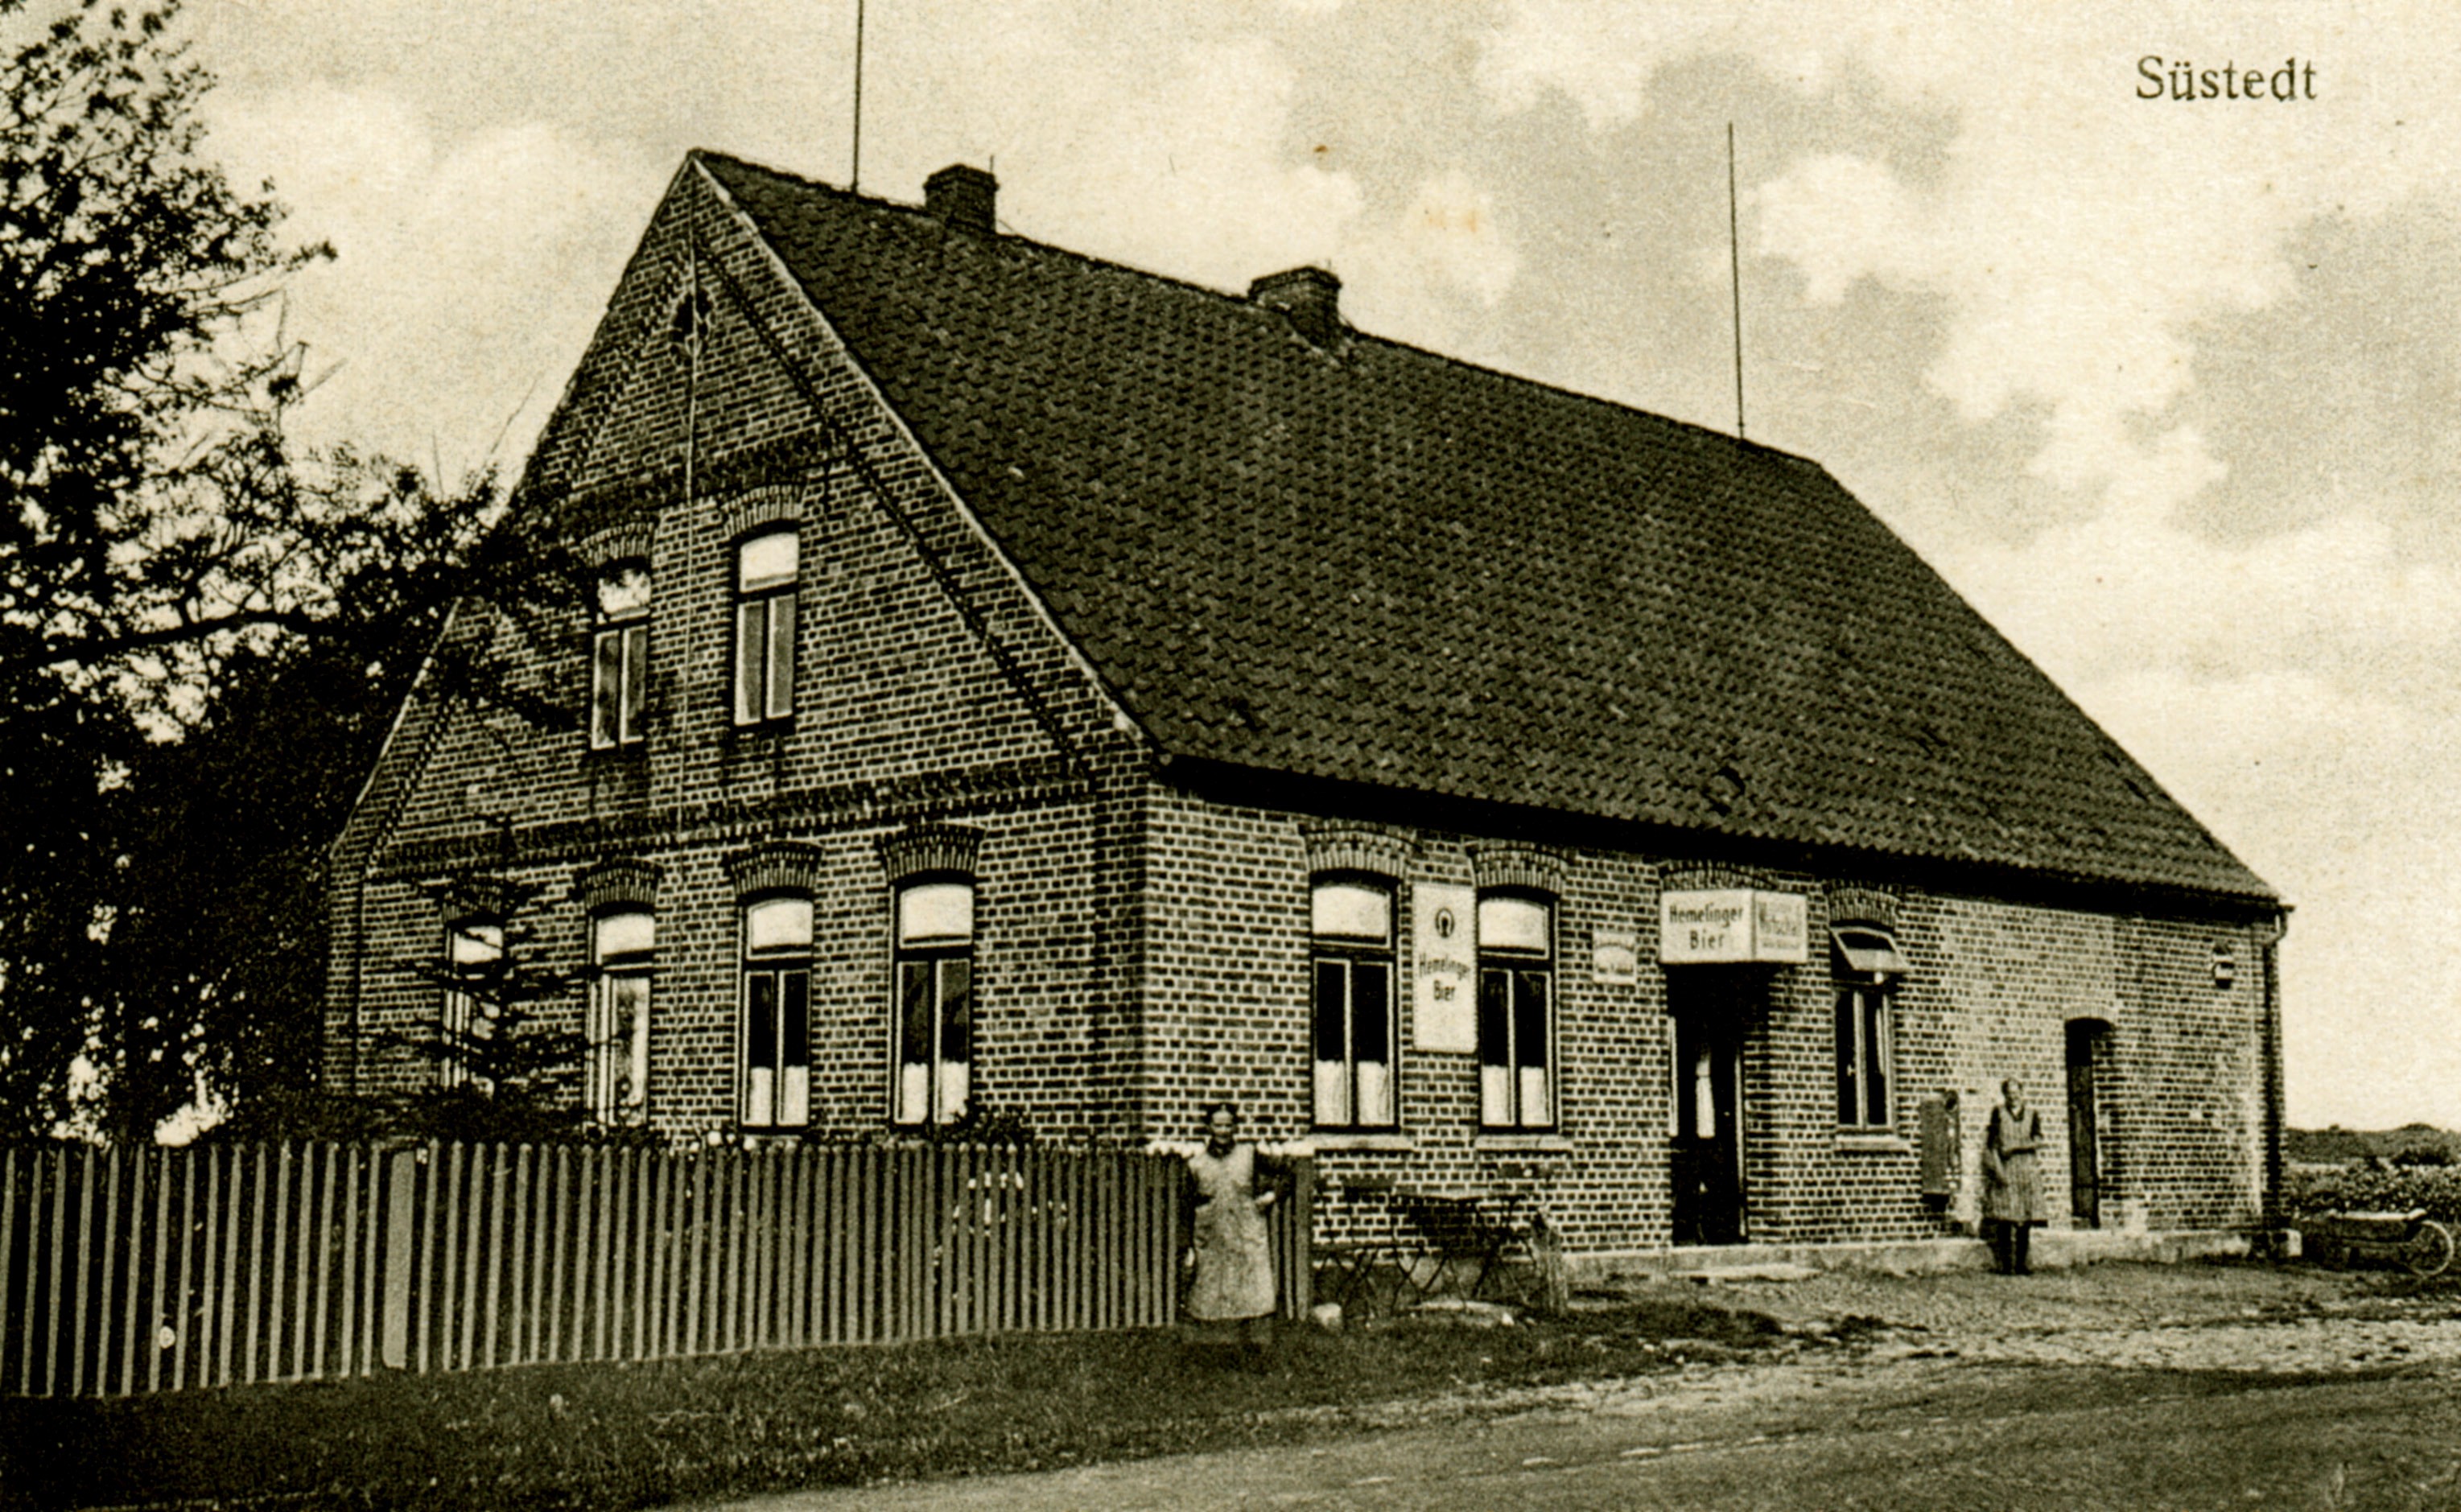 Gasthaus Kohlstedt in der Samtgemeinde Bruchhausen-Vilsen - Flecken Bruchhausen-Vilsen - OT Süstedt (Kreismuseum Syke CC BY-NC-SA)